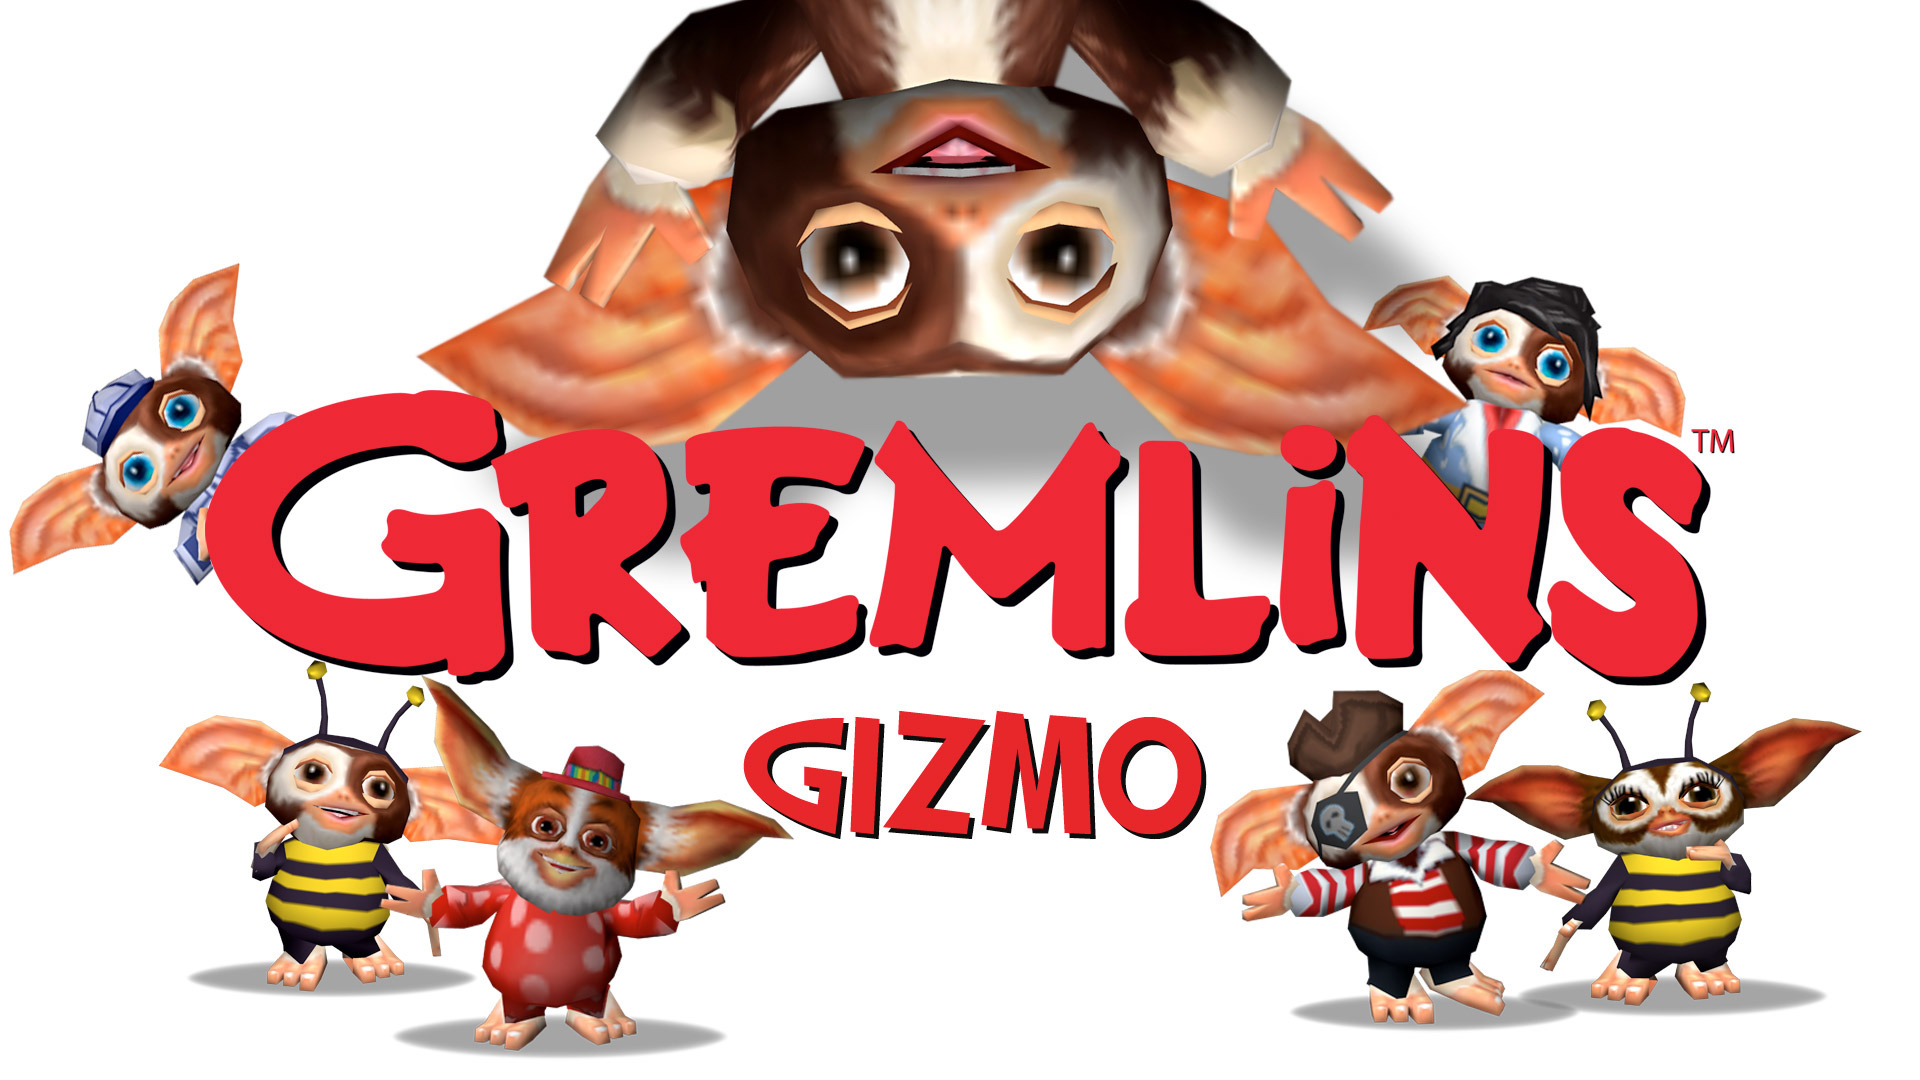 Free Download Wallpaper Gremlins Gizmo Hd 19x1080 For Your Desktop Mobile Tablet Explore 77 Gremlins Wallpaper Gizmo Wallpaper Amc Gremlin Wallpaper